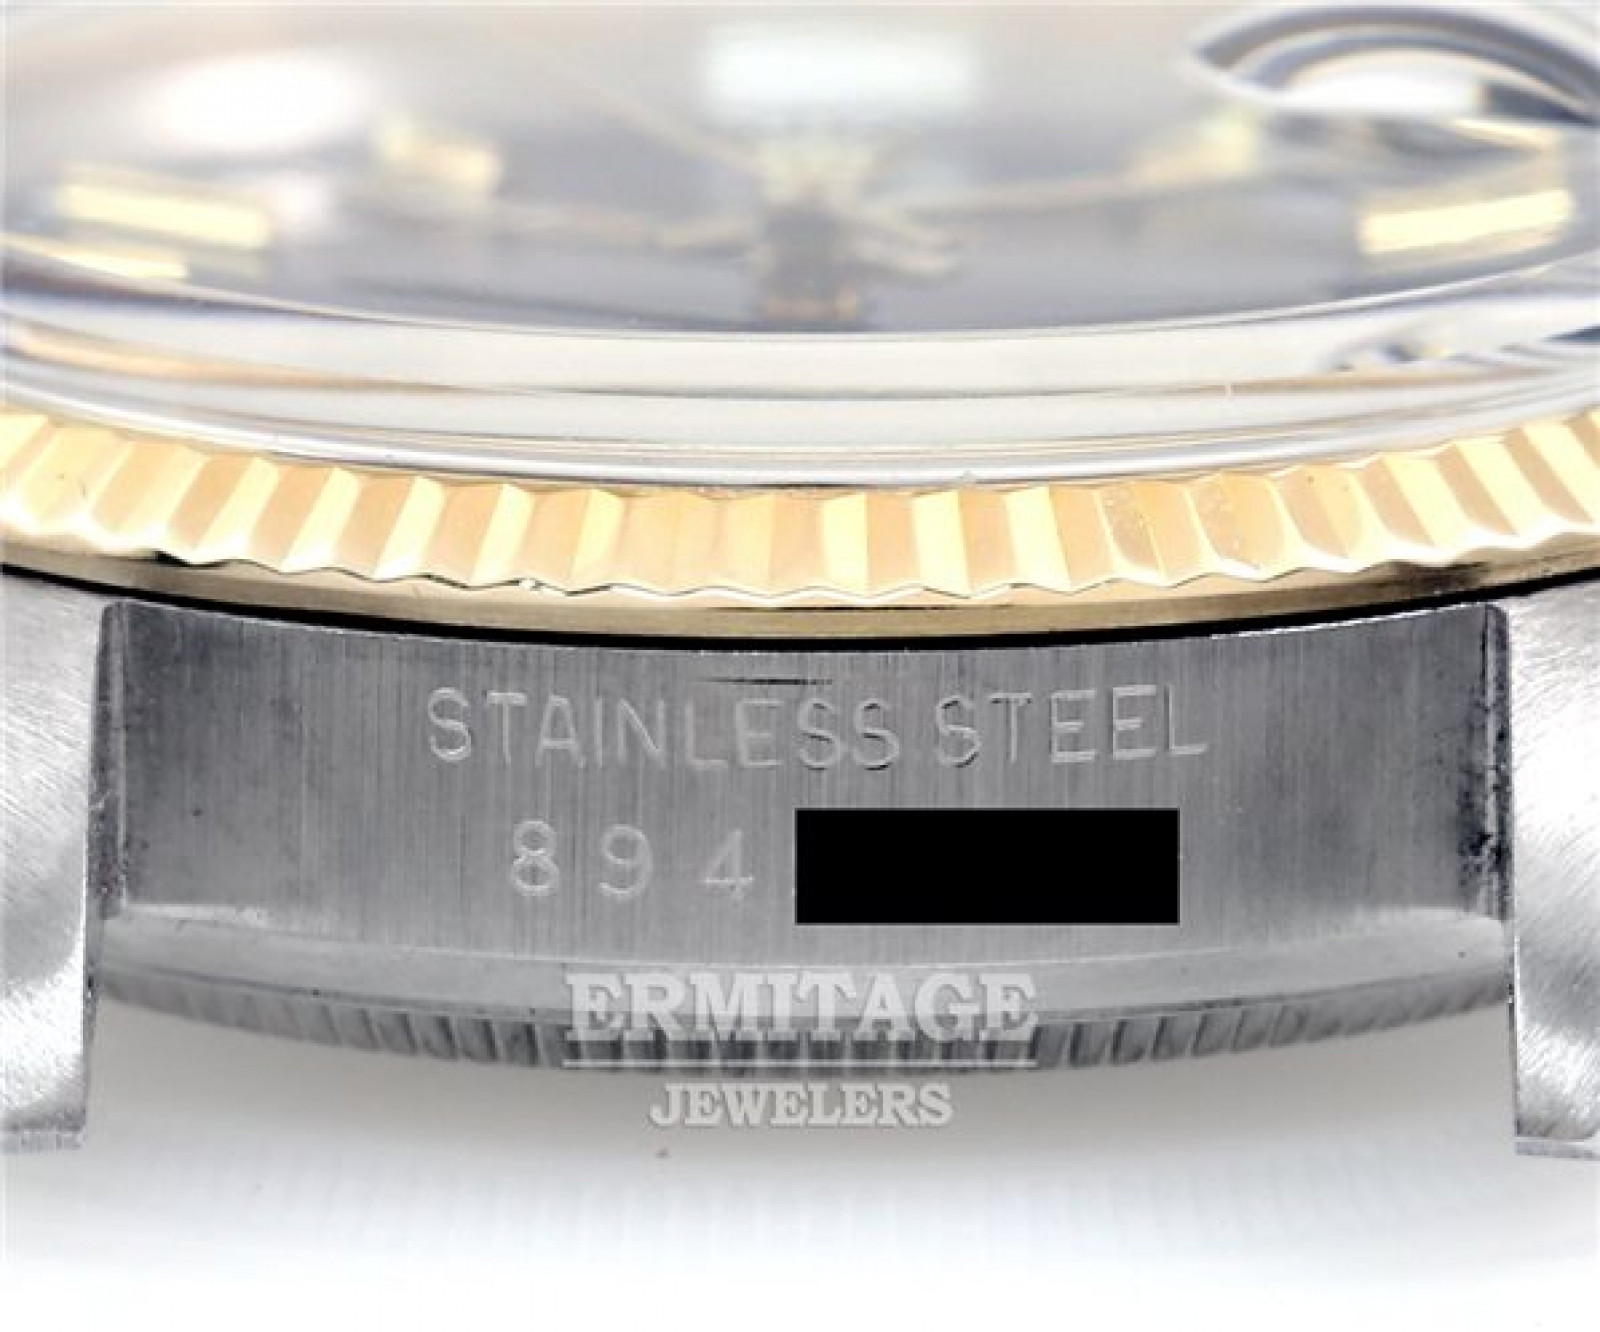 Men's Rolex Datejust 16013 with Jubilee Bracelet